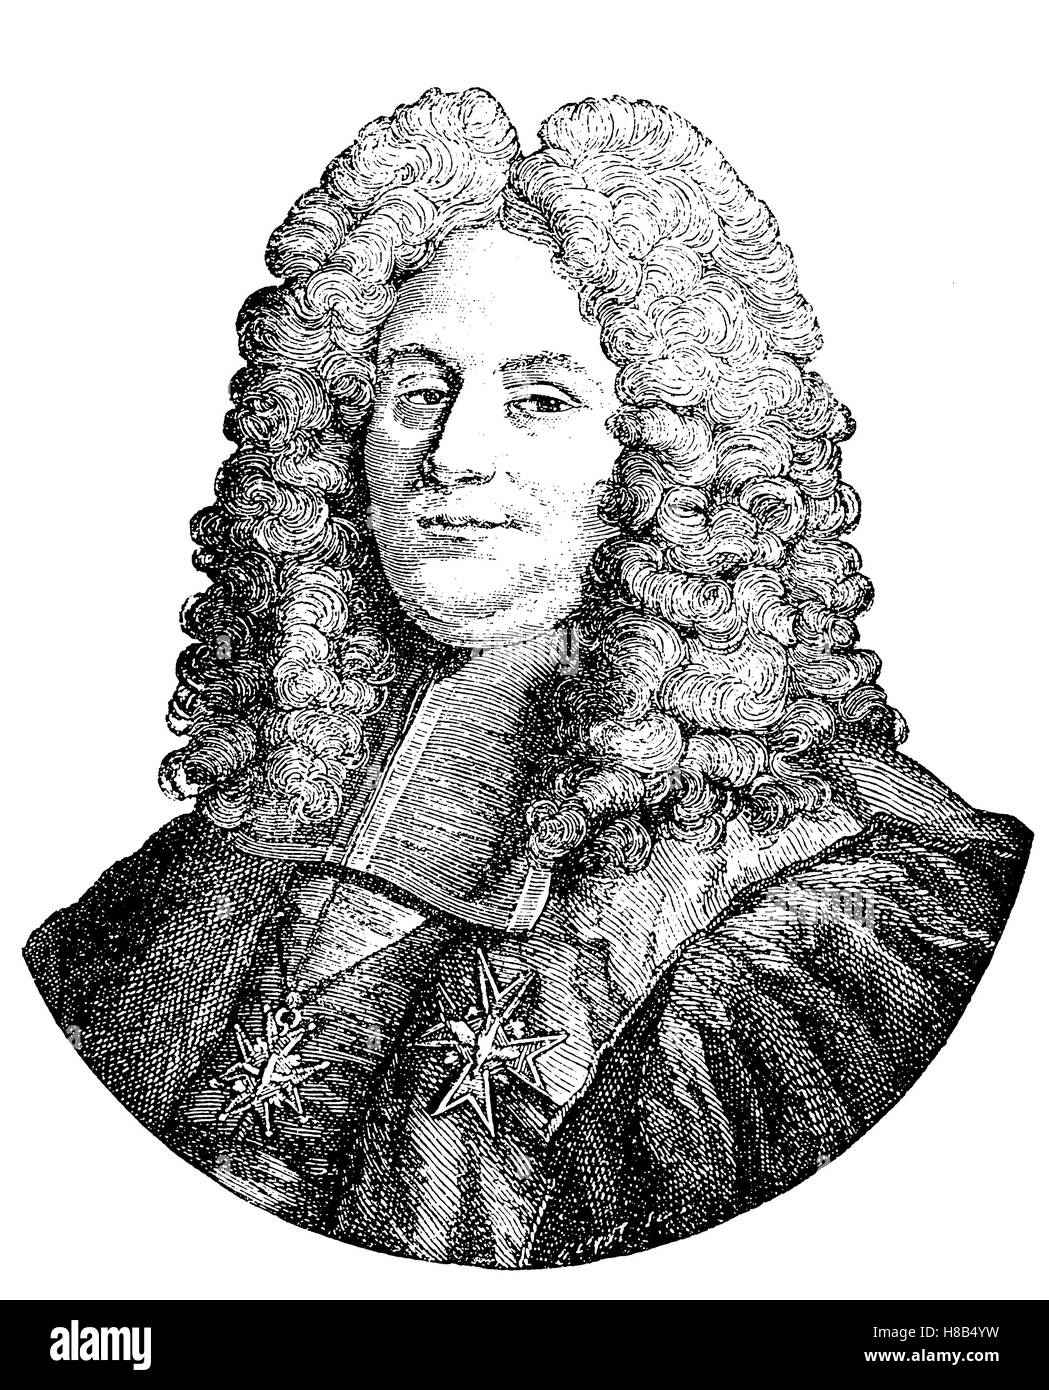 Allonge Perücke im Jahr 1710 die Kanzlerin d'Aguesseau nach dem Tod von  Louis XIV., Geschichte der Mode, Kostüm-Geschichte Stockfotografie - Alamy